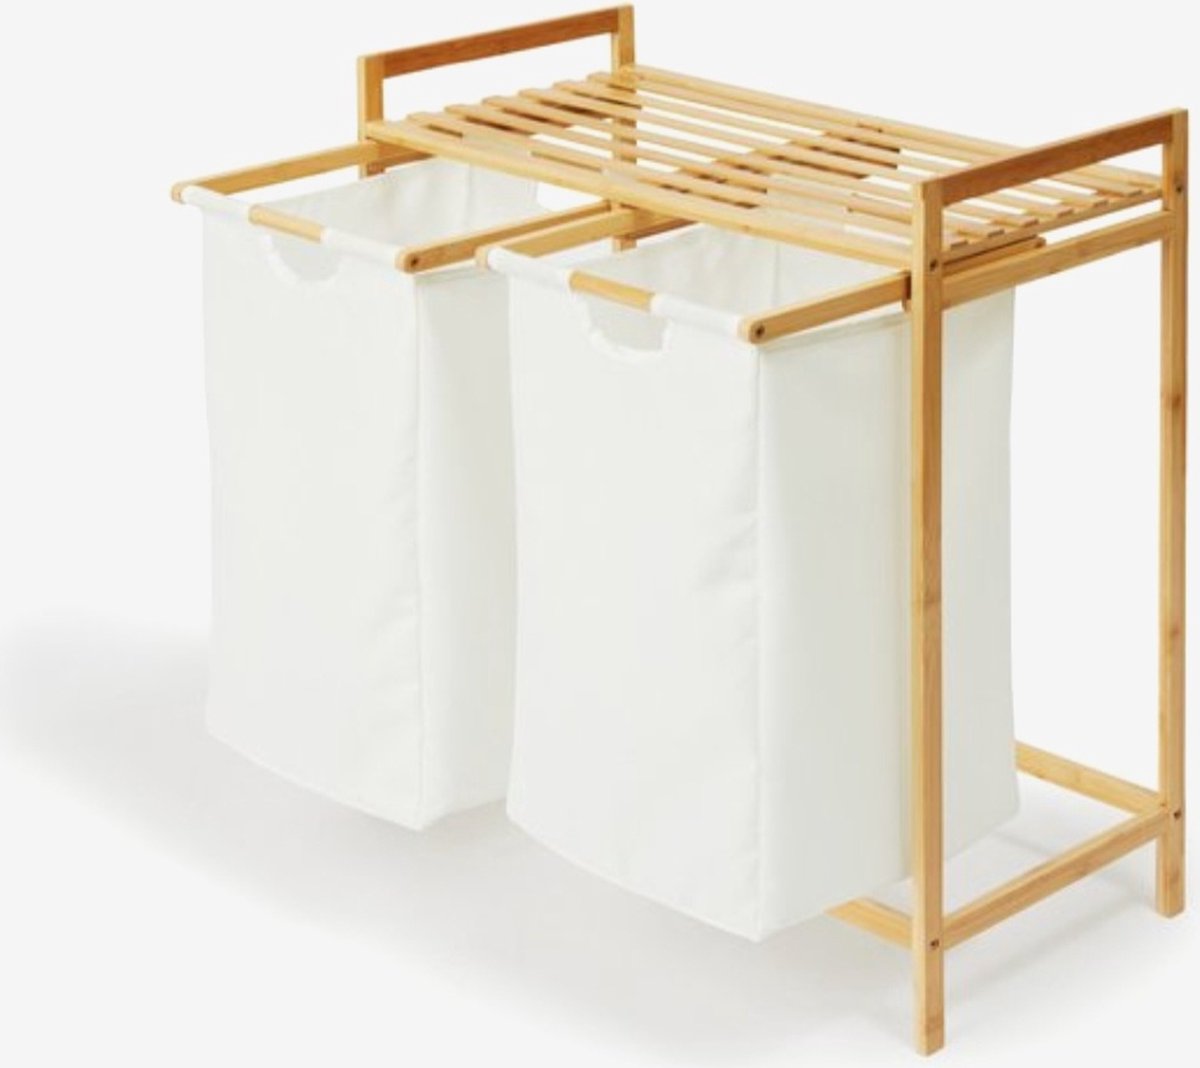 Sevva Home Bamboe Rek met Wasmanden - Polyester en Bamboe - Uitschuifbare Opbermanden met Deksel - Wassorteerbak 60 Liter - 2 Vakken - Voor Badkamer, Slaapkamer en Wasruimte - 64x 33x 73 cm